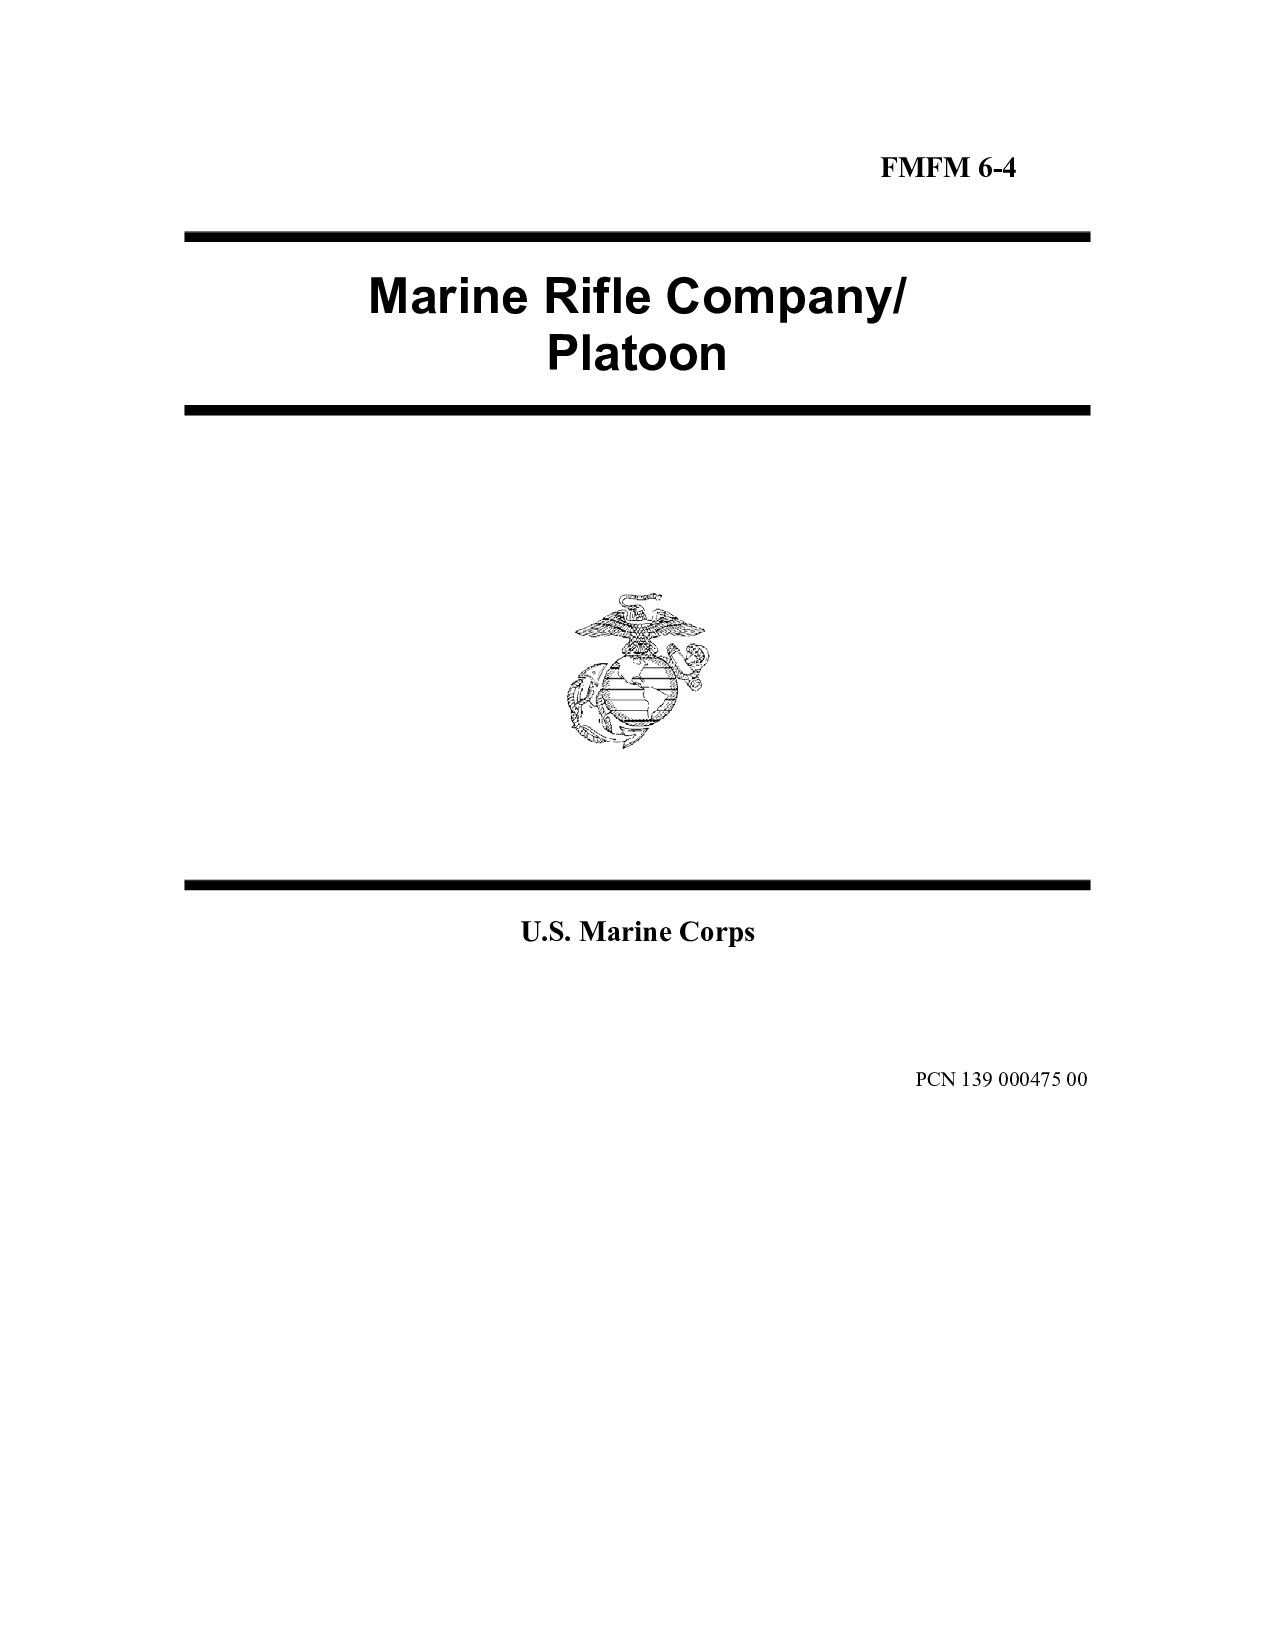 FMFM 6-4 Marine Rifle Company